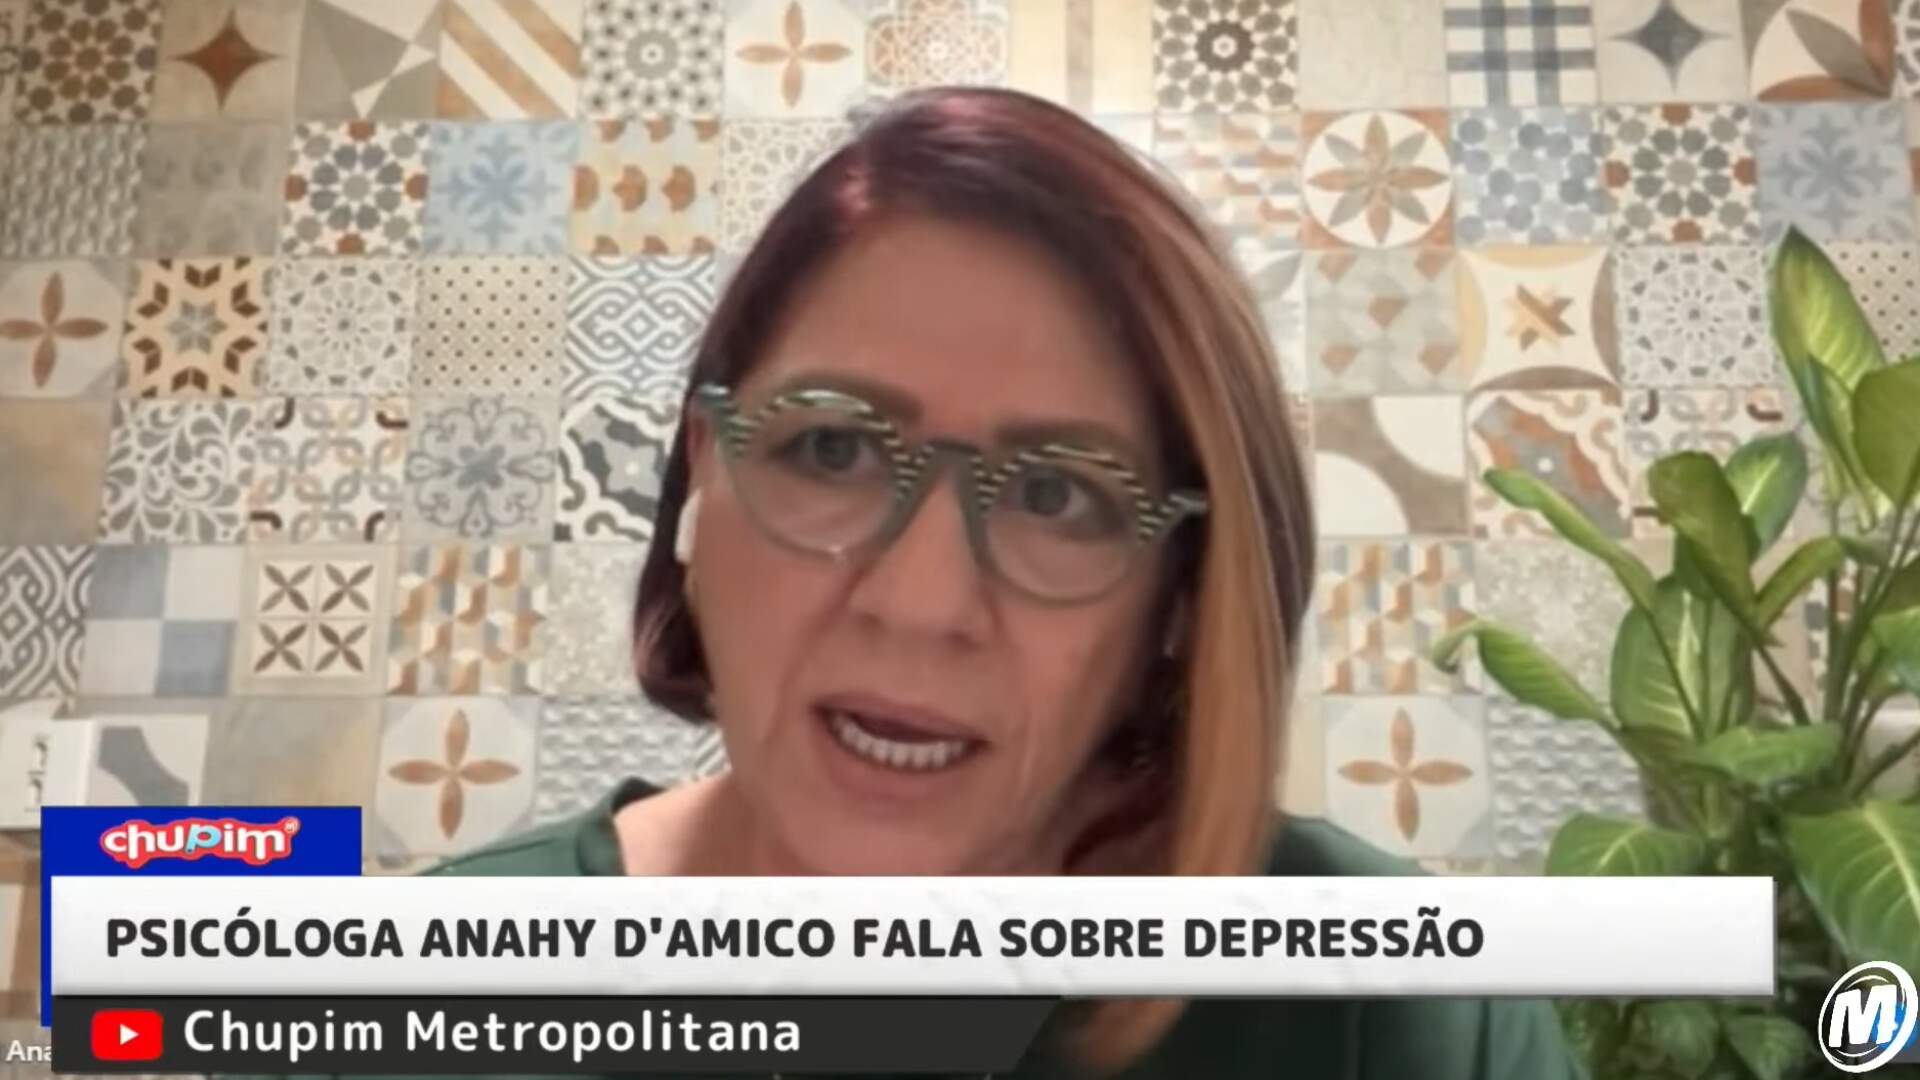 Dra. Anahy D’amico esclarece dúvidas sobre depressão: ‘A pandemia agravou muito!’ - Metropolitana FM